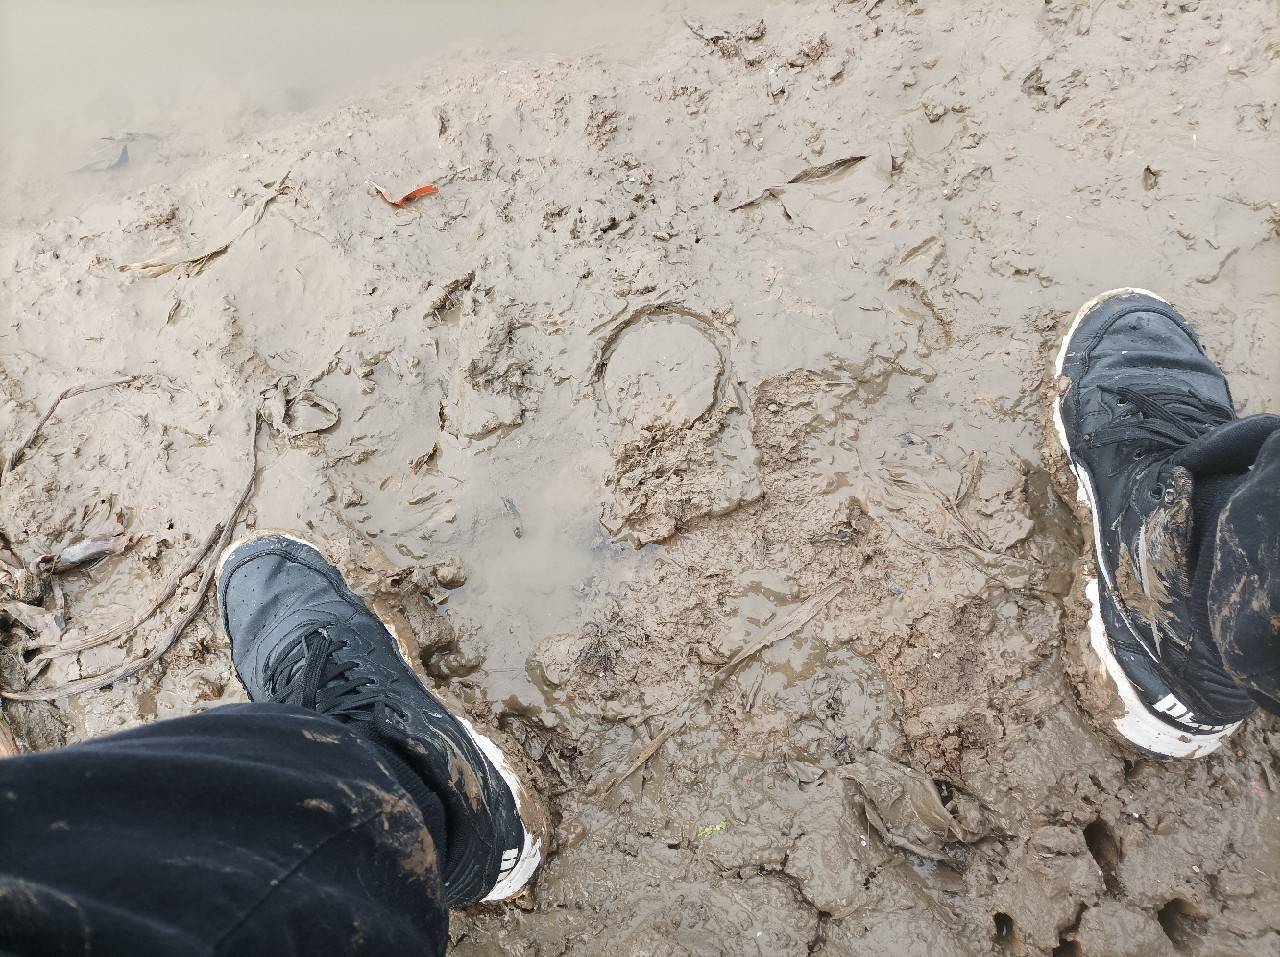 这泥巴太可怕了,我的鞋子即将报废.